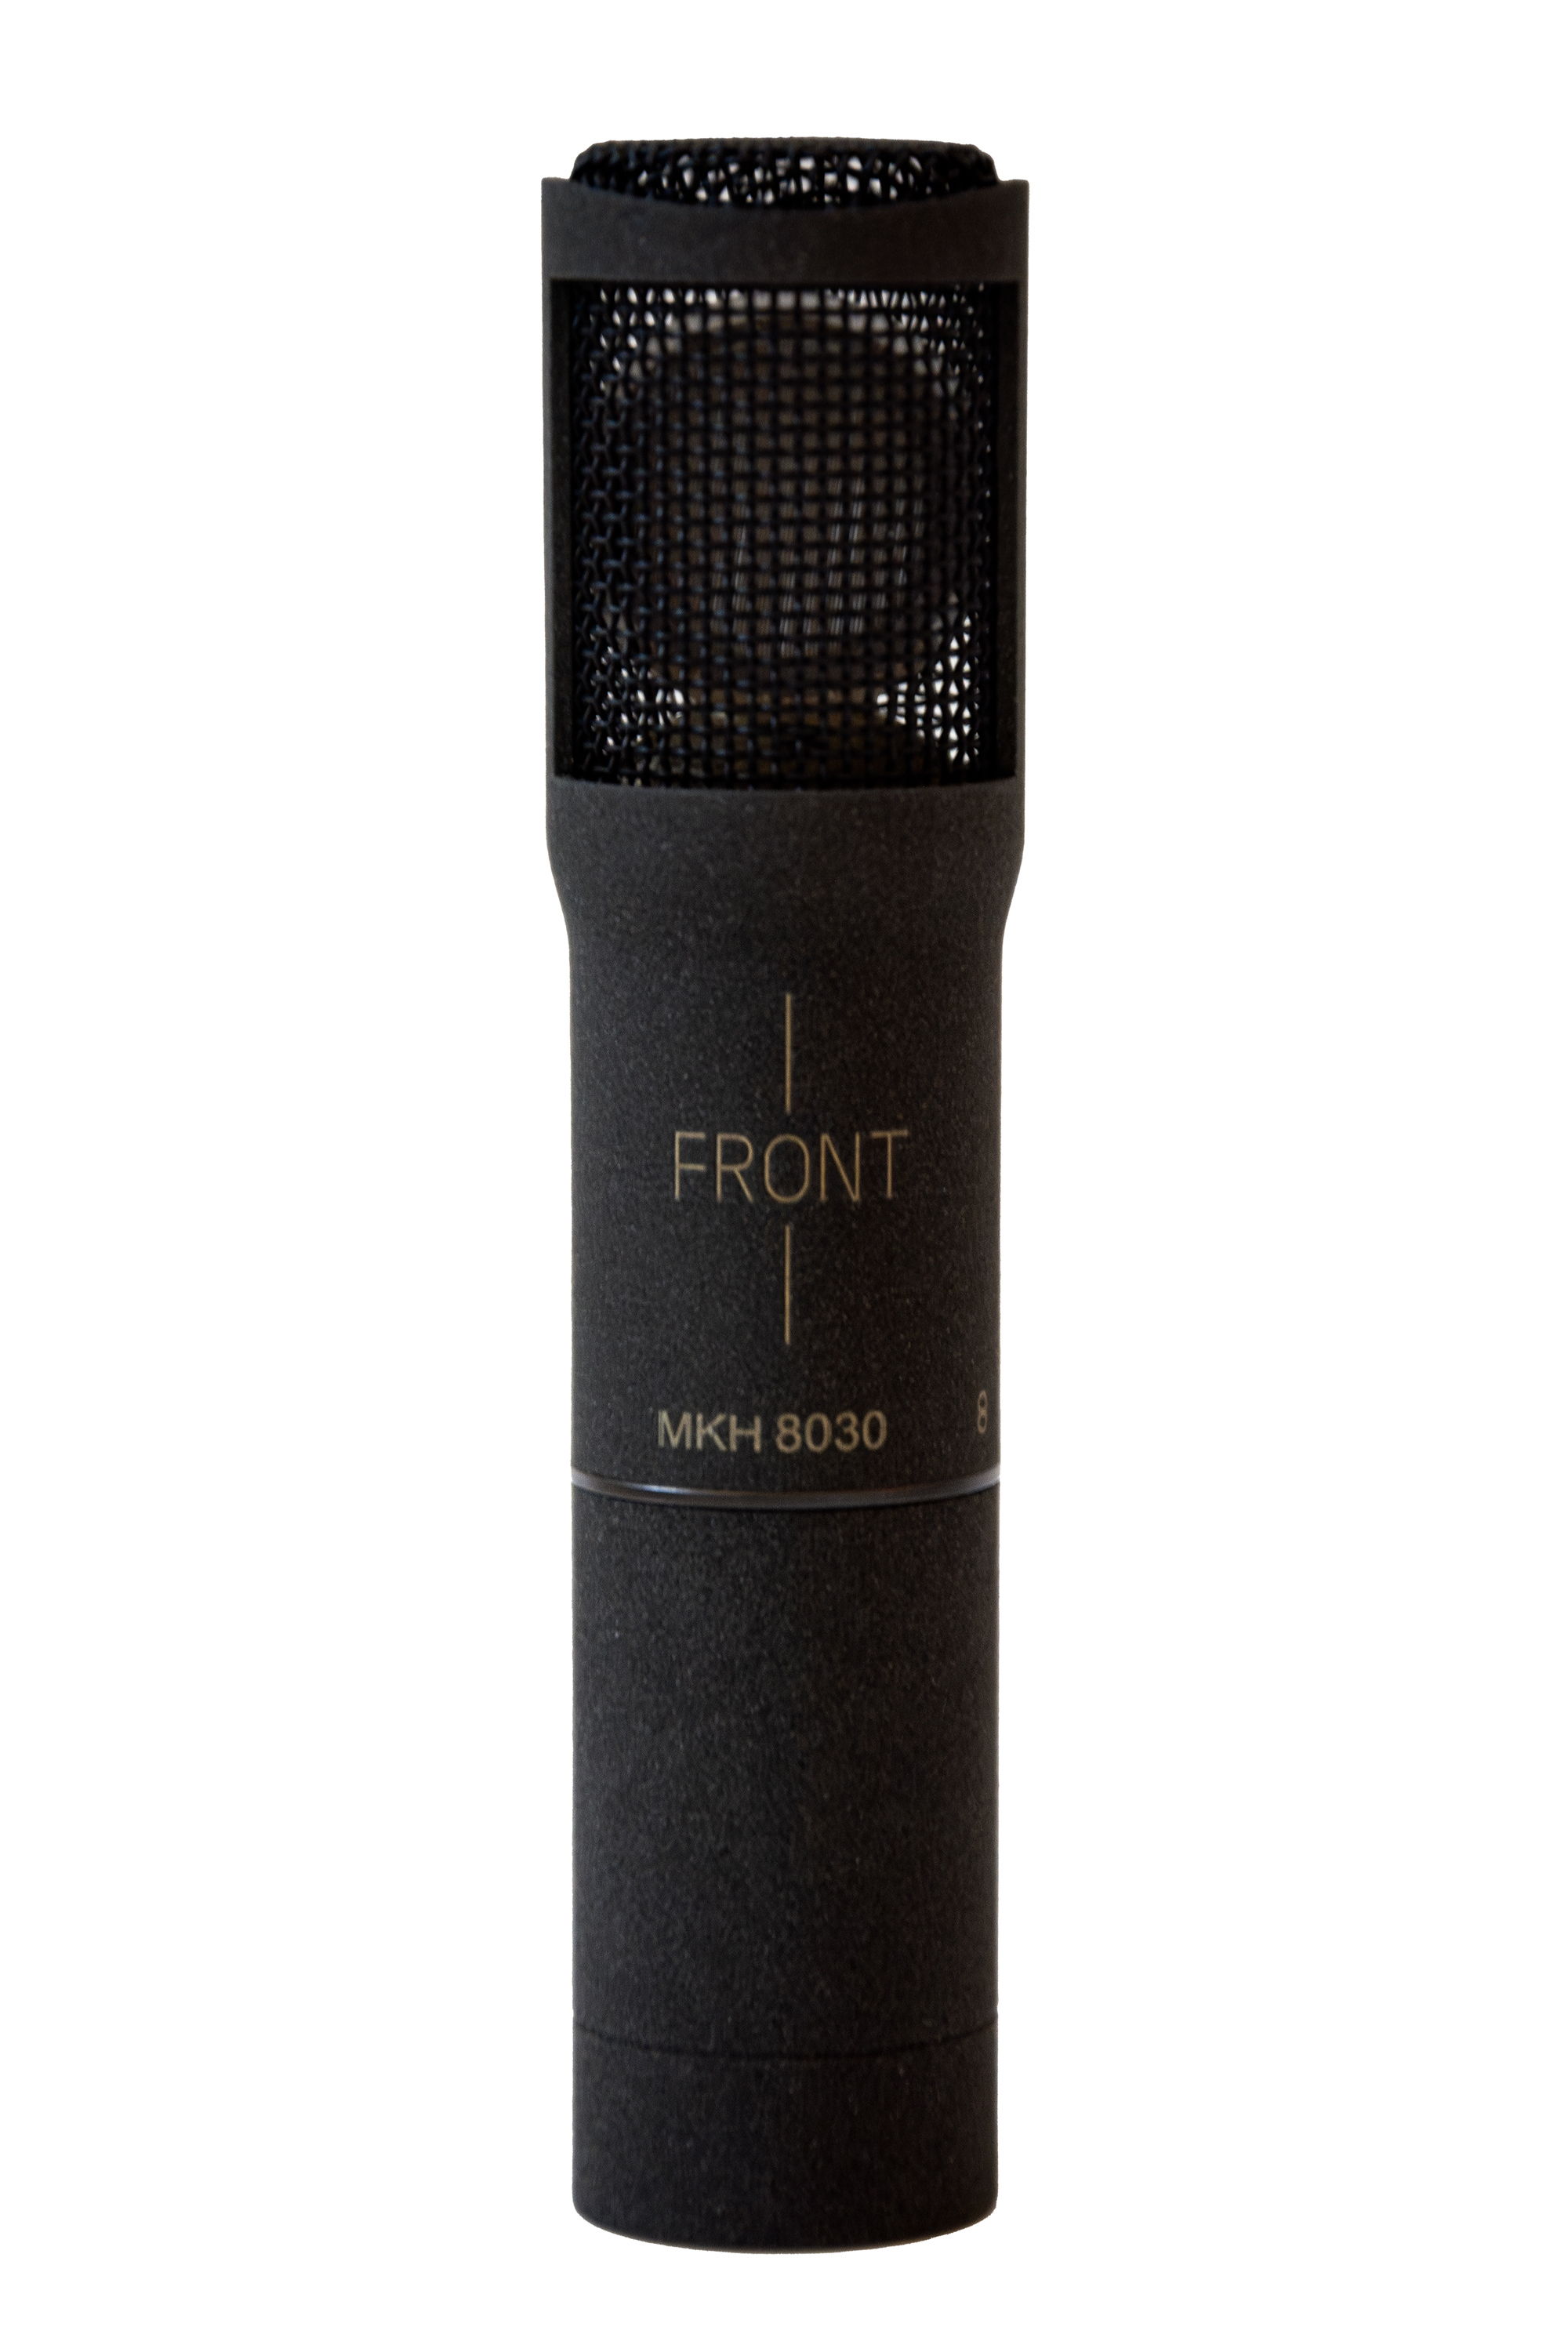 Le microphone à condensateur RF MKH 8030 avec une directivité en forme de 8 est extrêmement compact : 19/21 mm de diamètre et 93 mm de longueur, module XLR compris (photo d’aperçu uniquement)